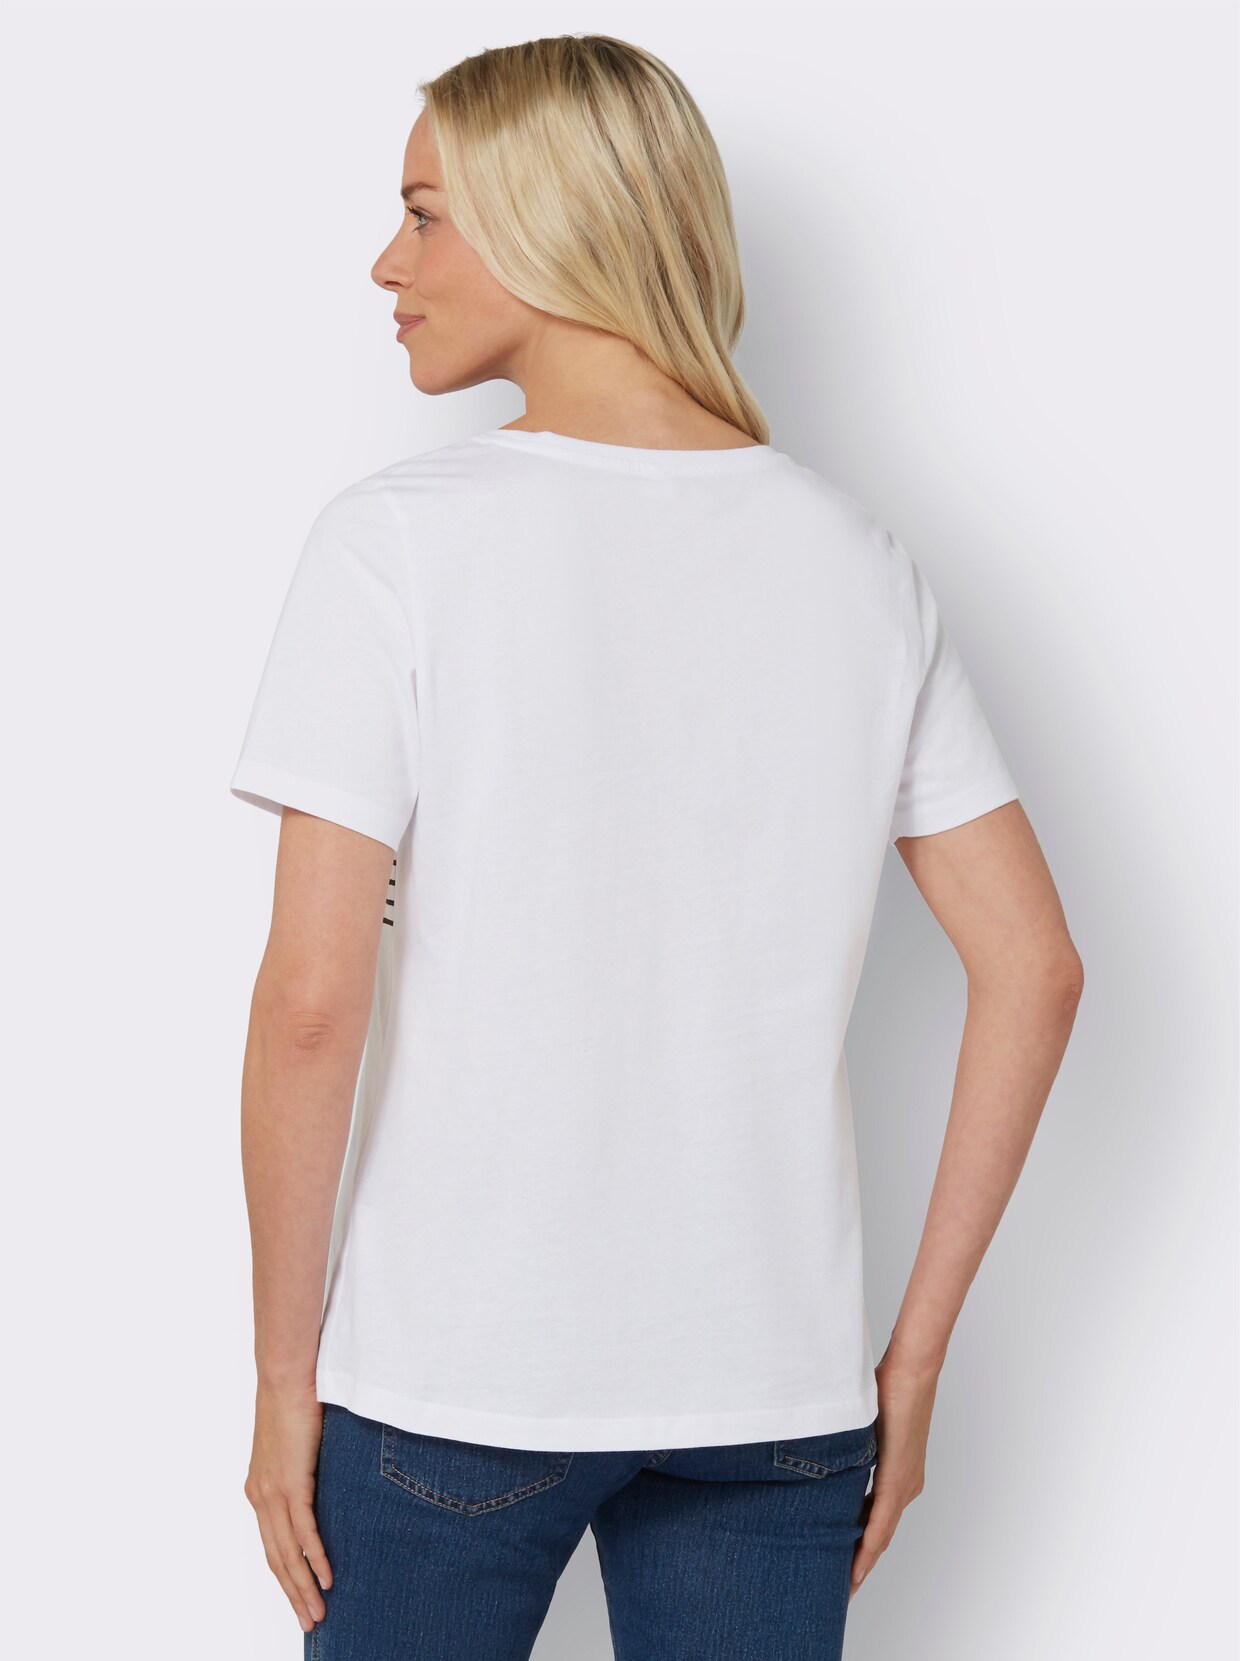 Tričko s krátkým rukávem - bílá-potisk